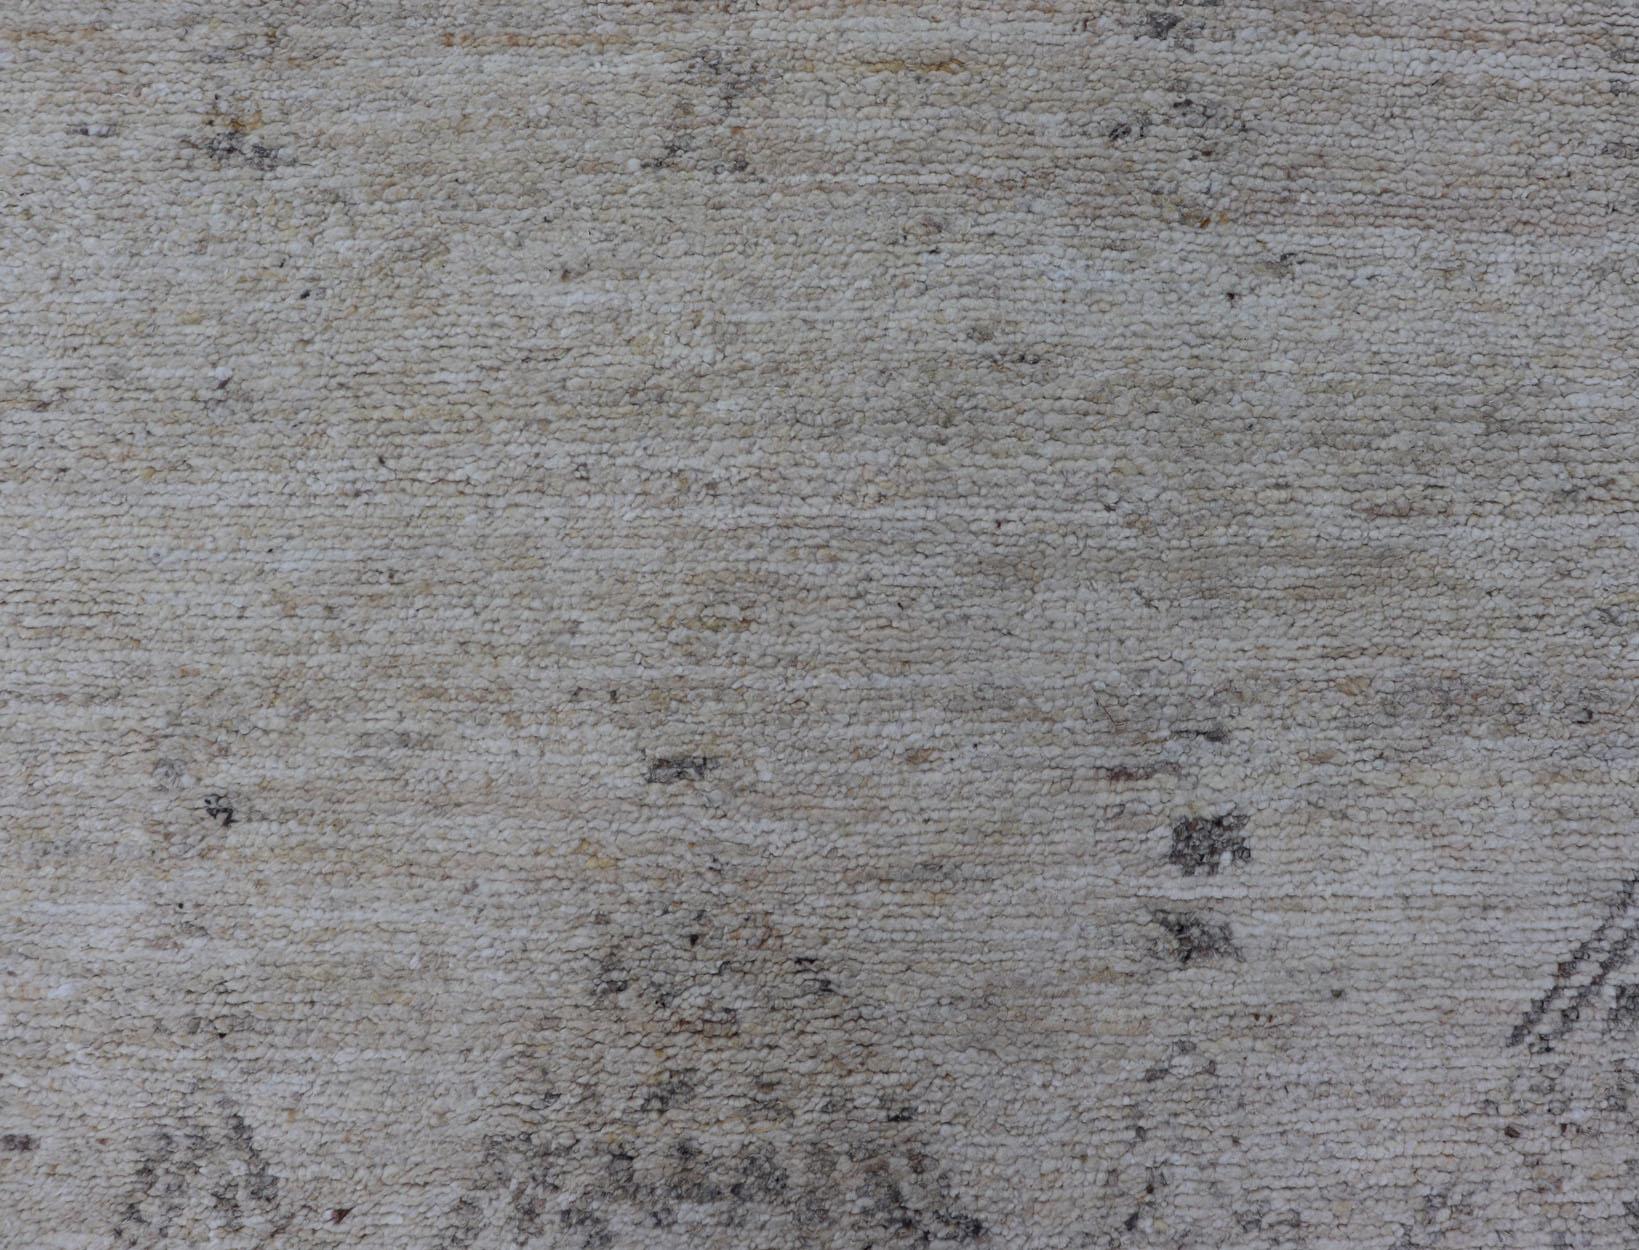 Mesure 4'5 x 14'0 

 Long chemin de table moderne en tons neutres avec motif de diamant de style marocain
    
Mesure 4'5 x 14'0 

Ce chemin de table moderne présente un champ beige crémeux dans lequel se trouvent des losanges neutres plus sombres,